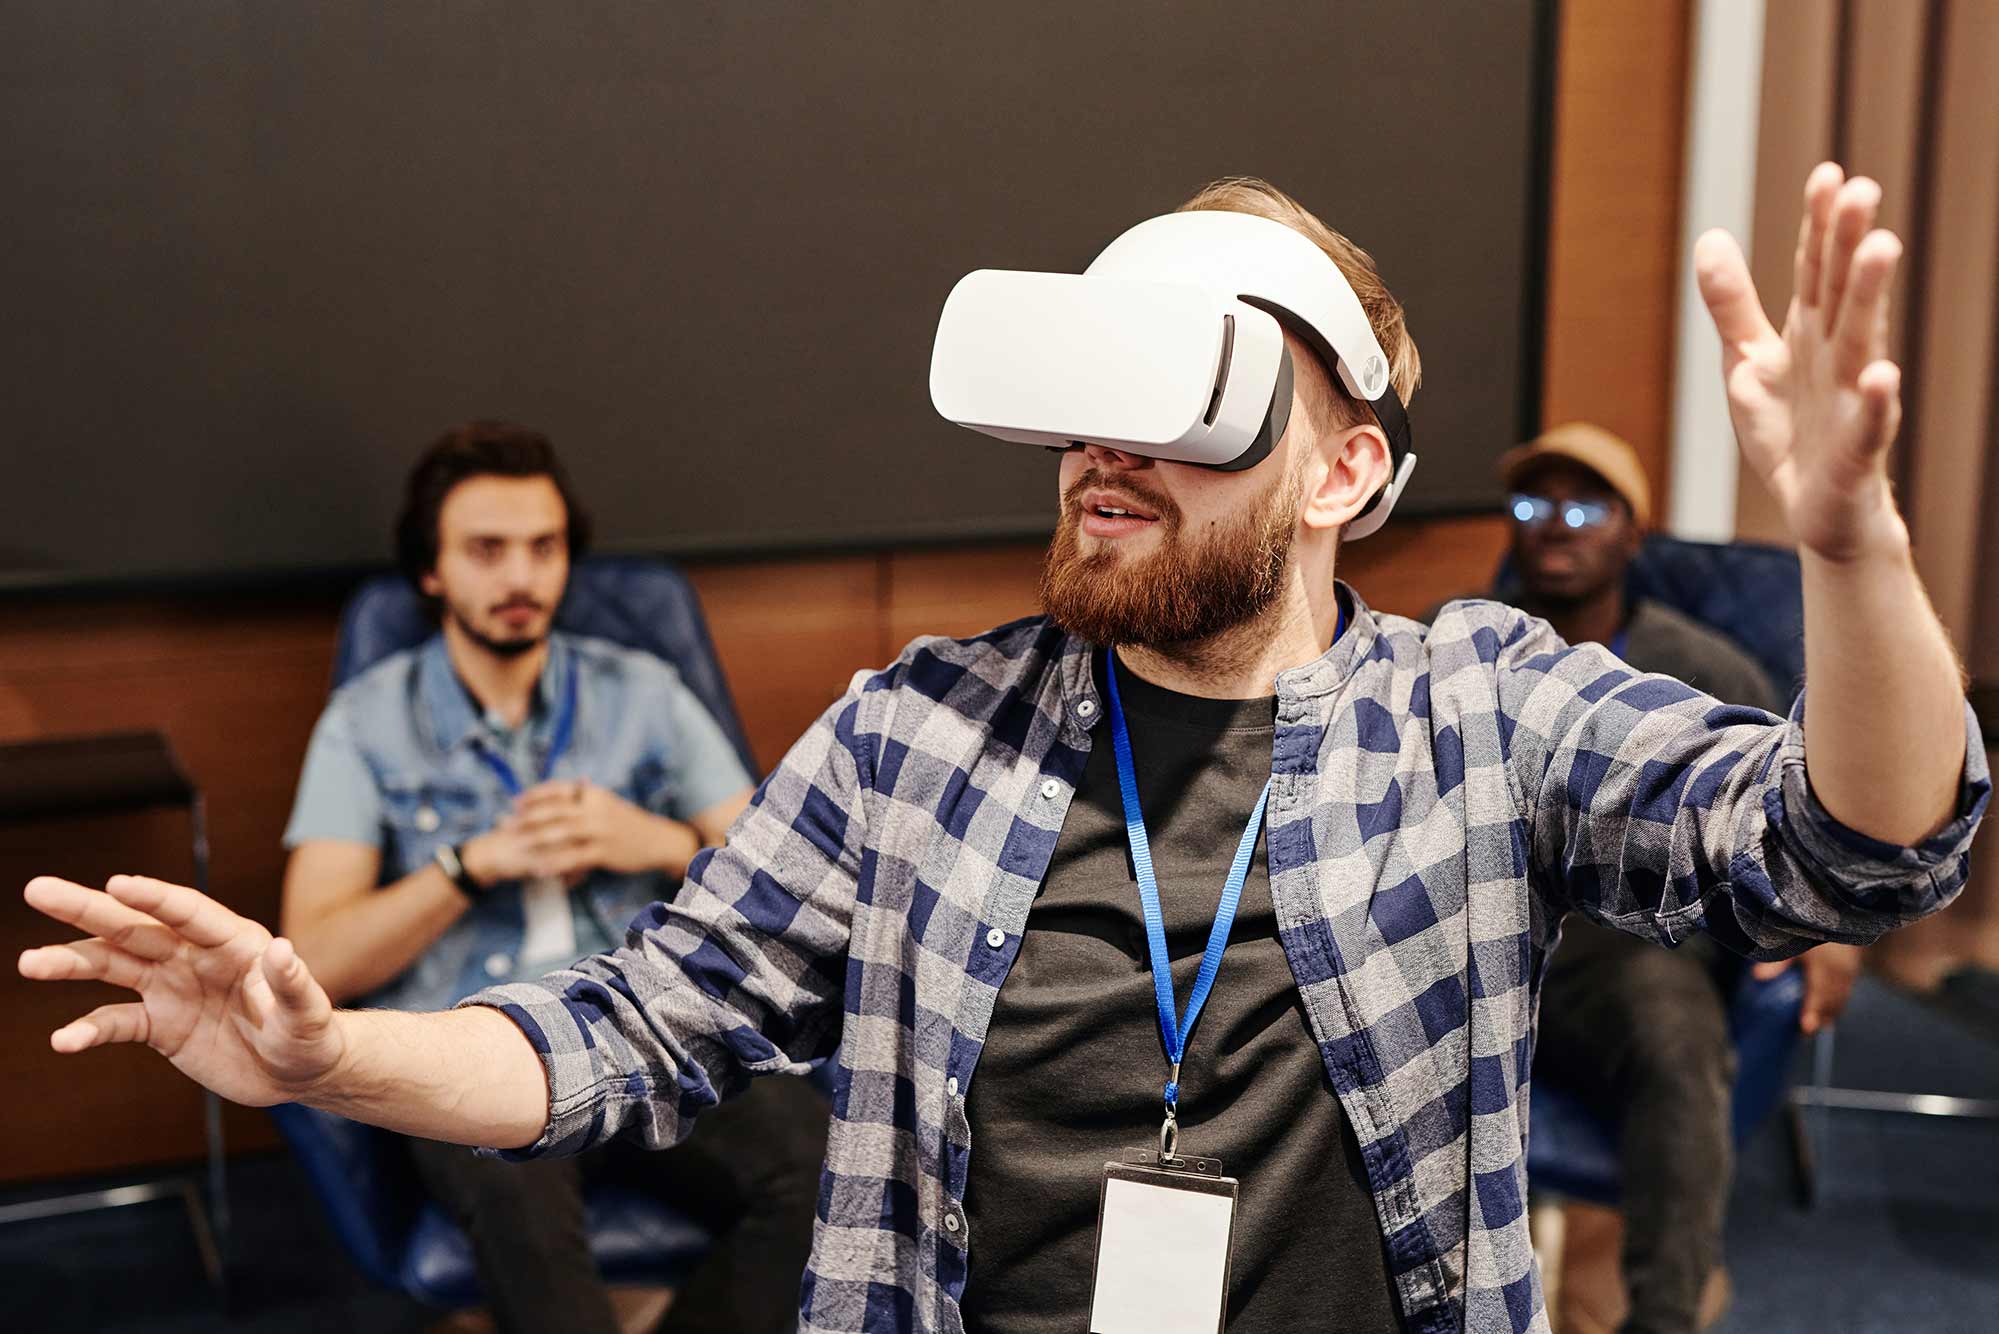 La realidad virtual está transformando la educación y la capacitación